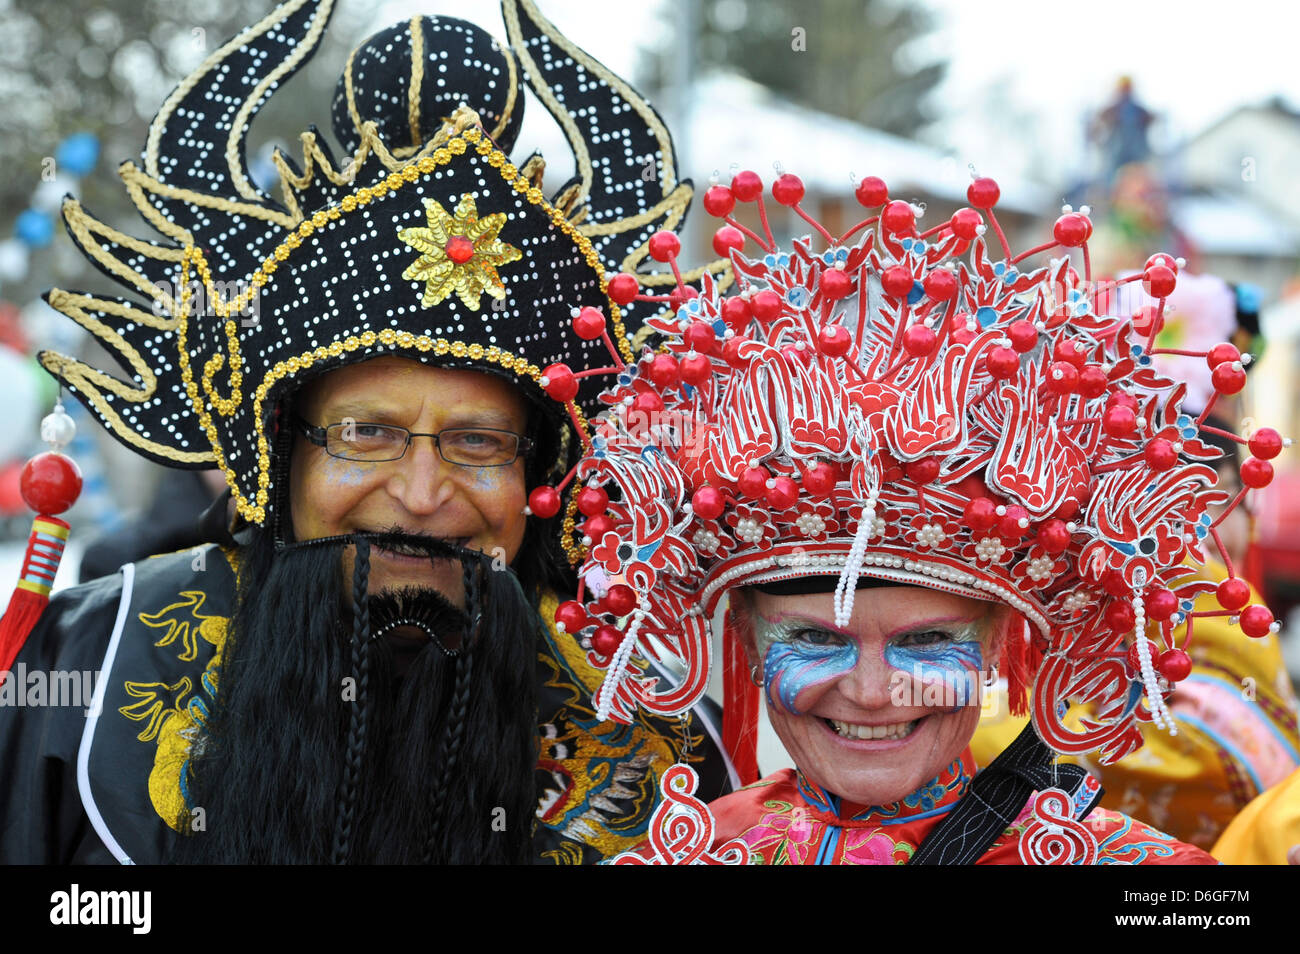 I partecipanti vestiti in costumi cinesi prendere parte in cinese  tradizionale sfilata di carnevale a Dietfurt, Germania, 16 febbraio 2012.  Come ogni anno, carnivalists vestito come asiatici festeggia il carnevale  in Dietfurt.